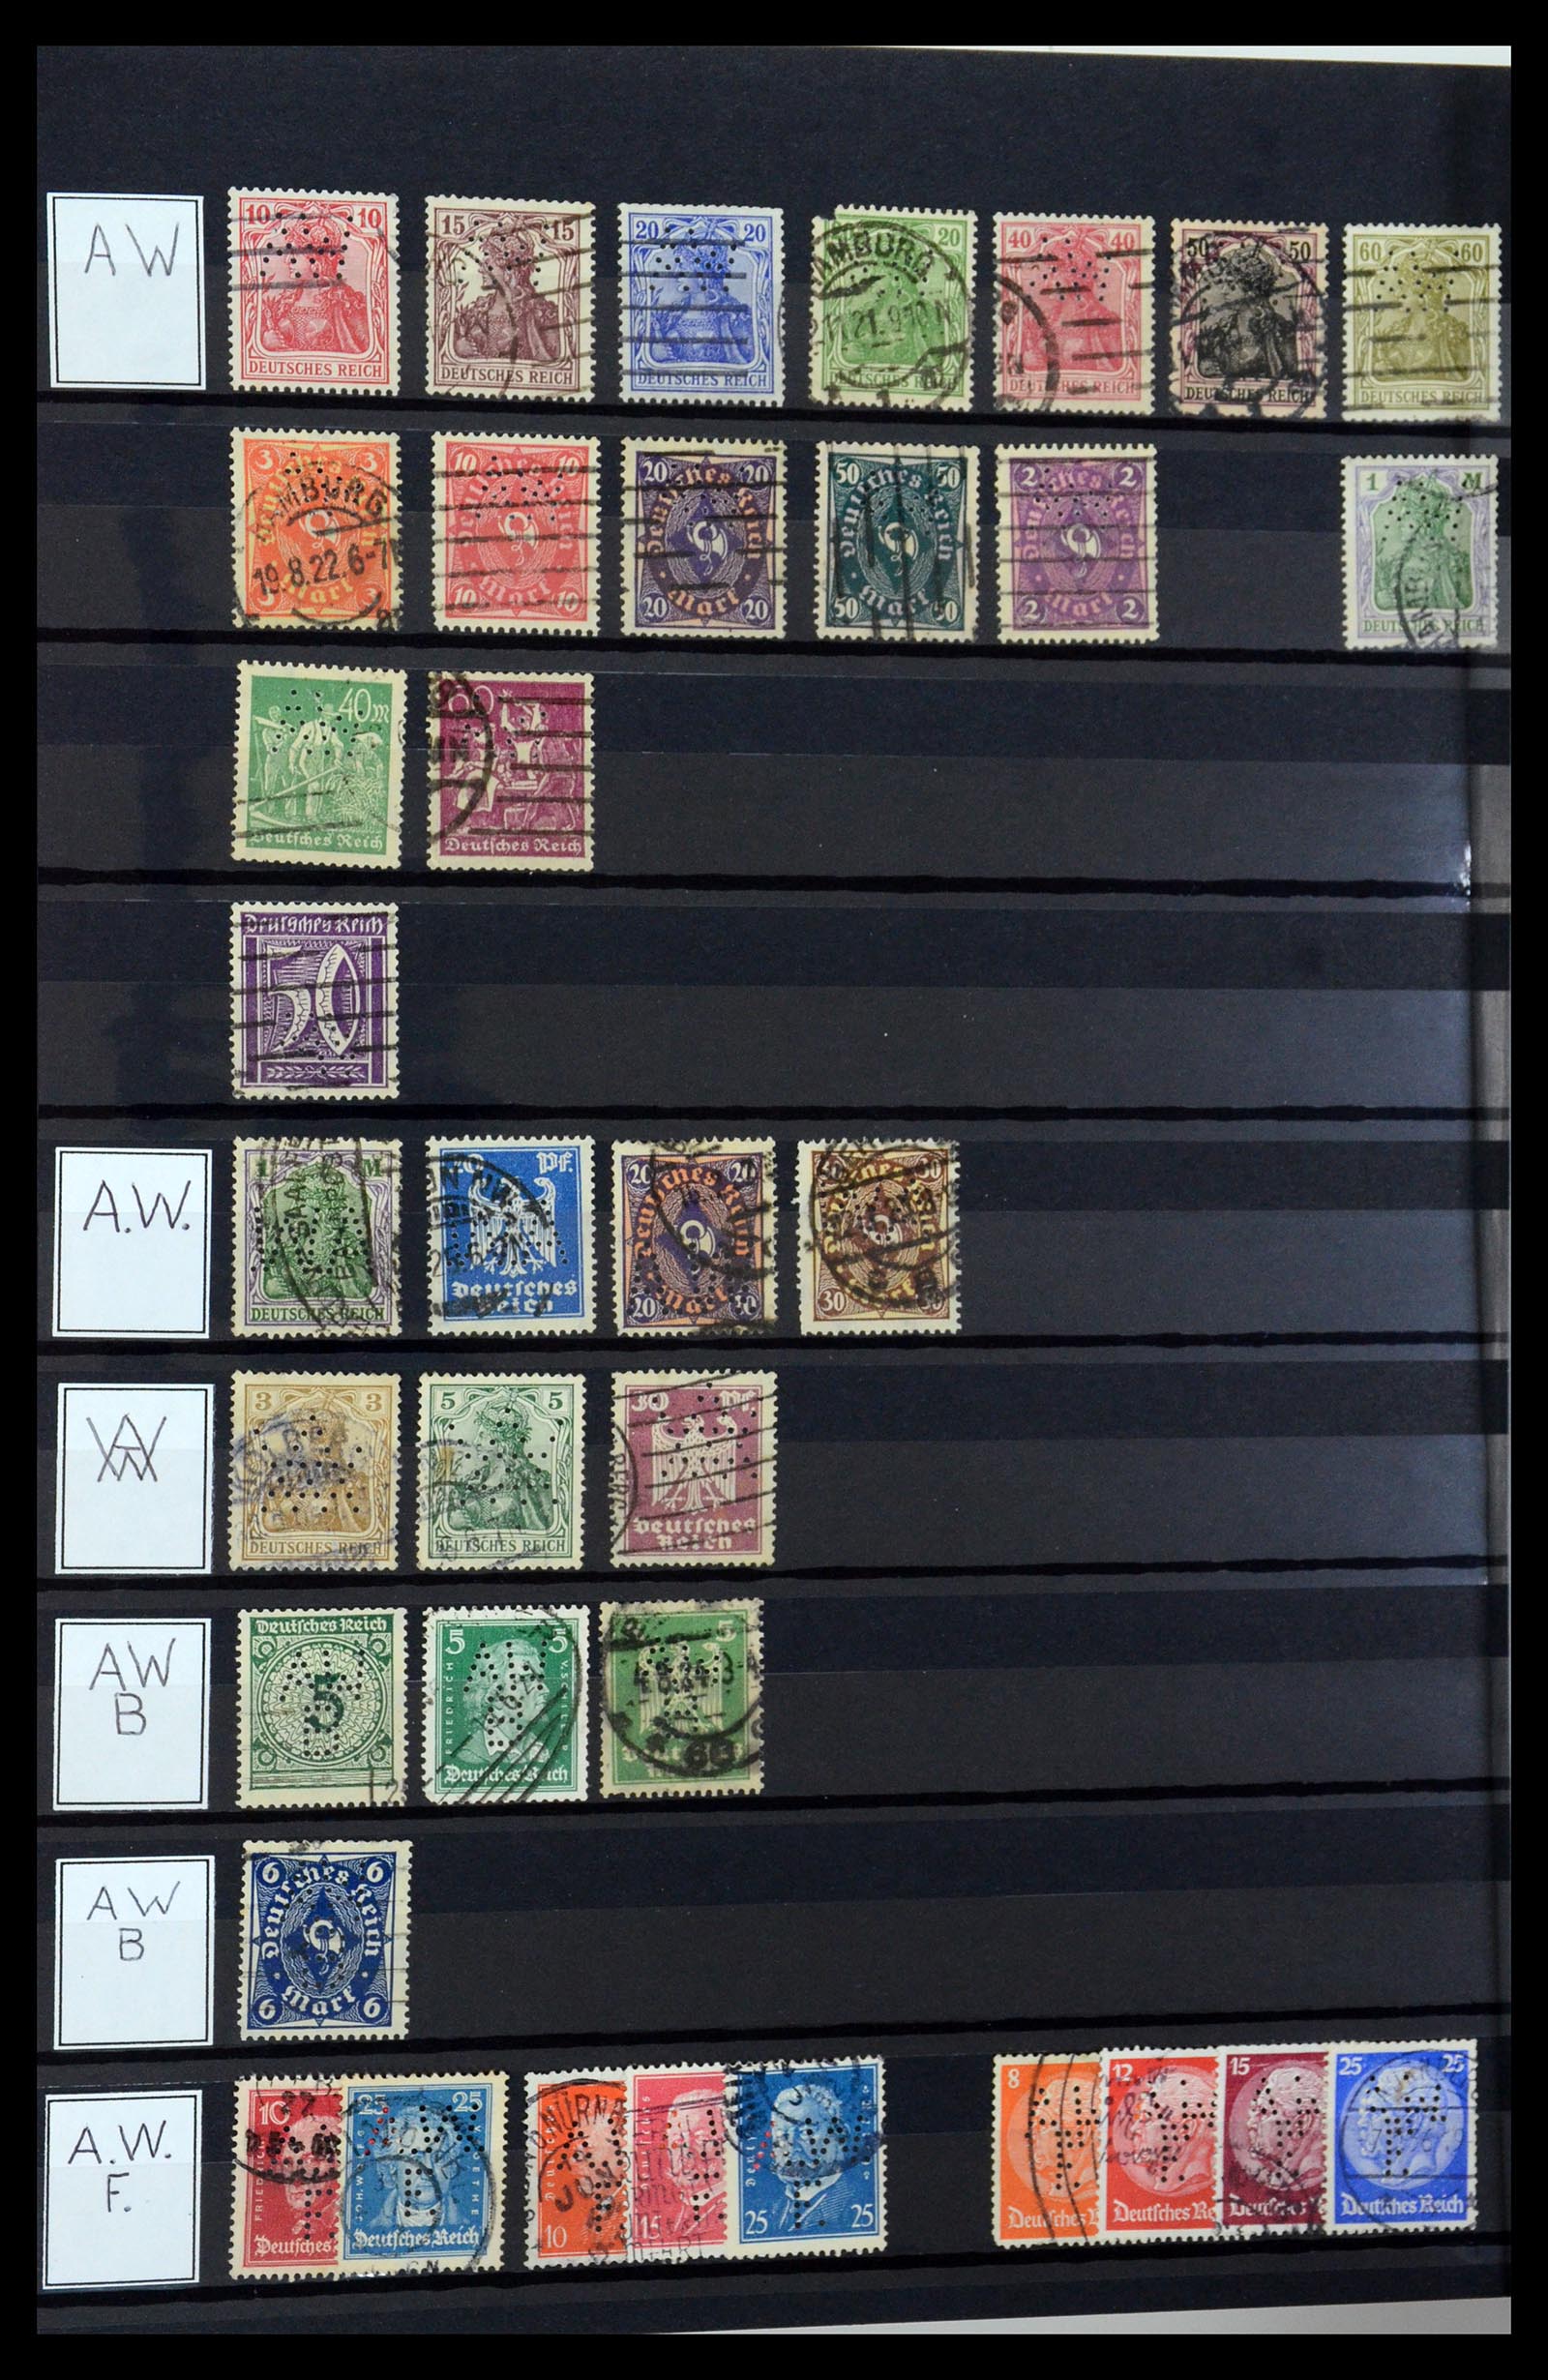 36405 030 - Stamp collection 36405 German Reich perfins 1880-1945.